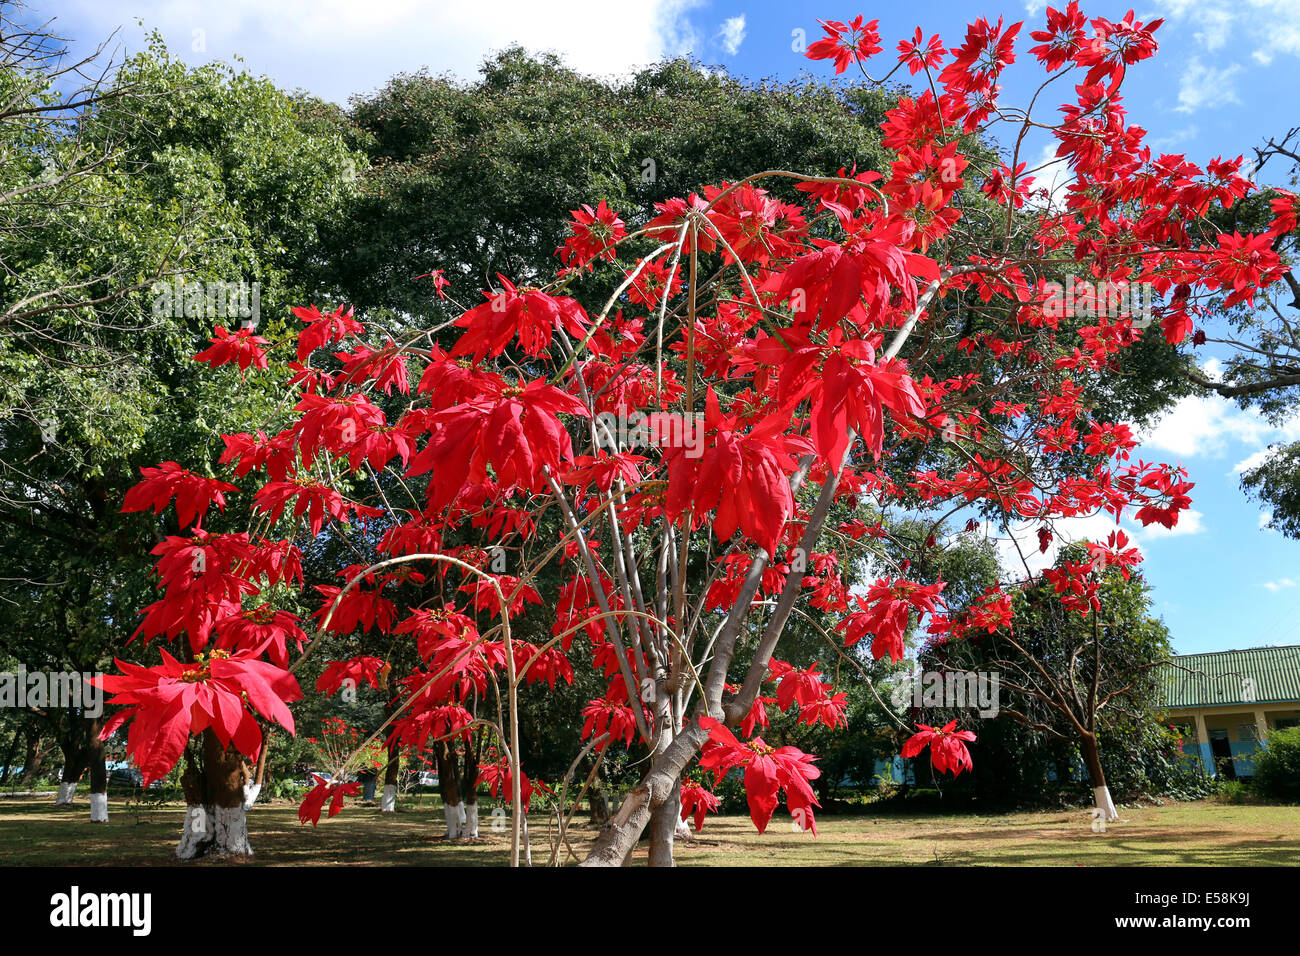 Le foglie rosse della stella di Natale, Poinsettia (Euphorbia pulcherrima), Weihnachtsstern. Zambia, Africa Foto Stock